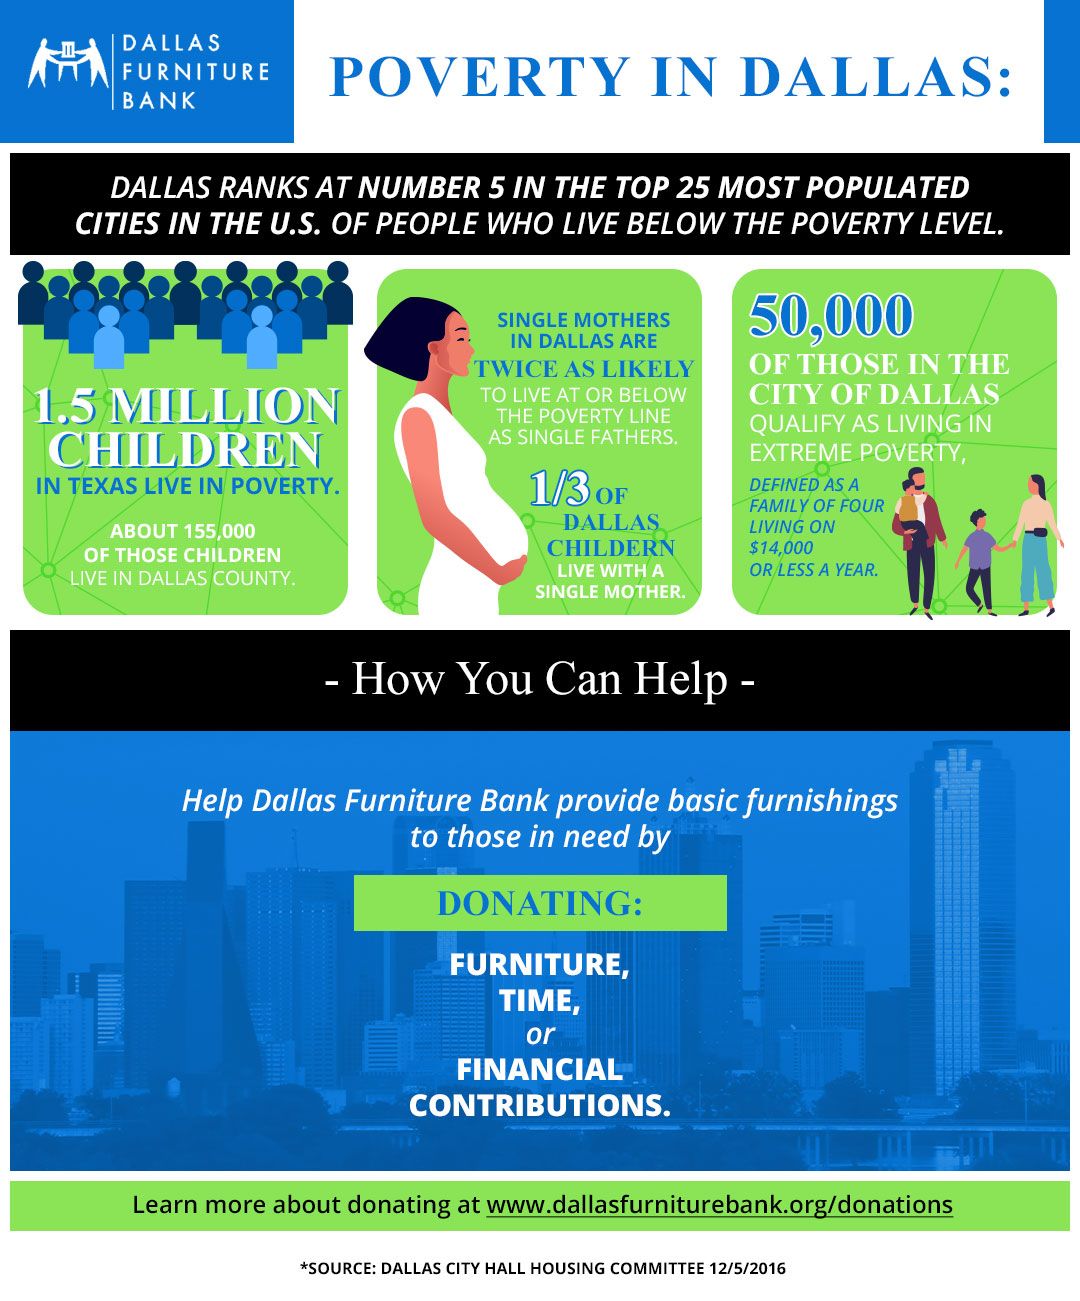 Dallas Furniture Bank_Poverty in Dallas_Infographic.jpg